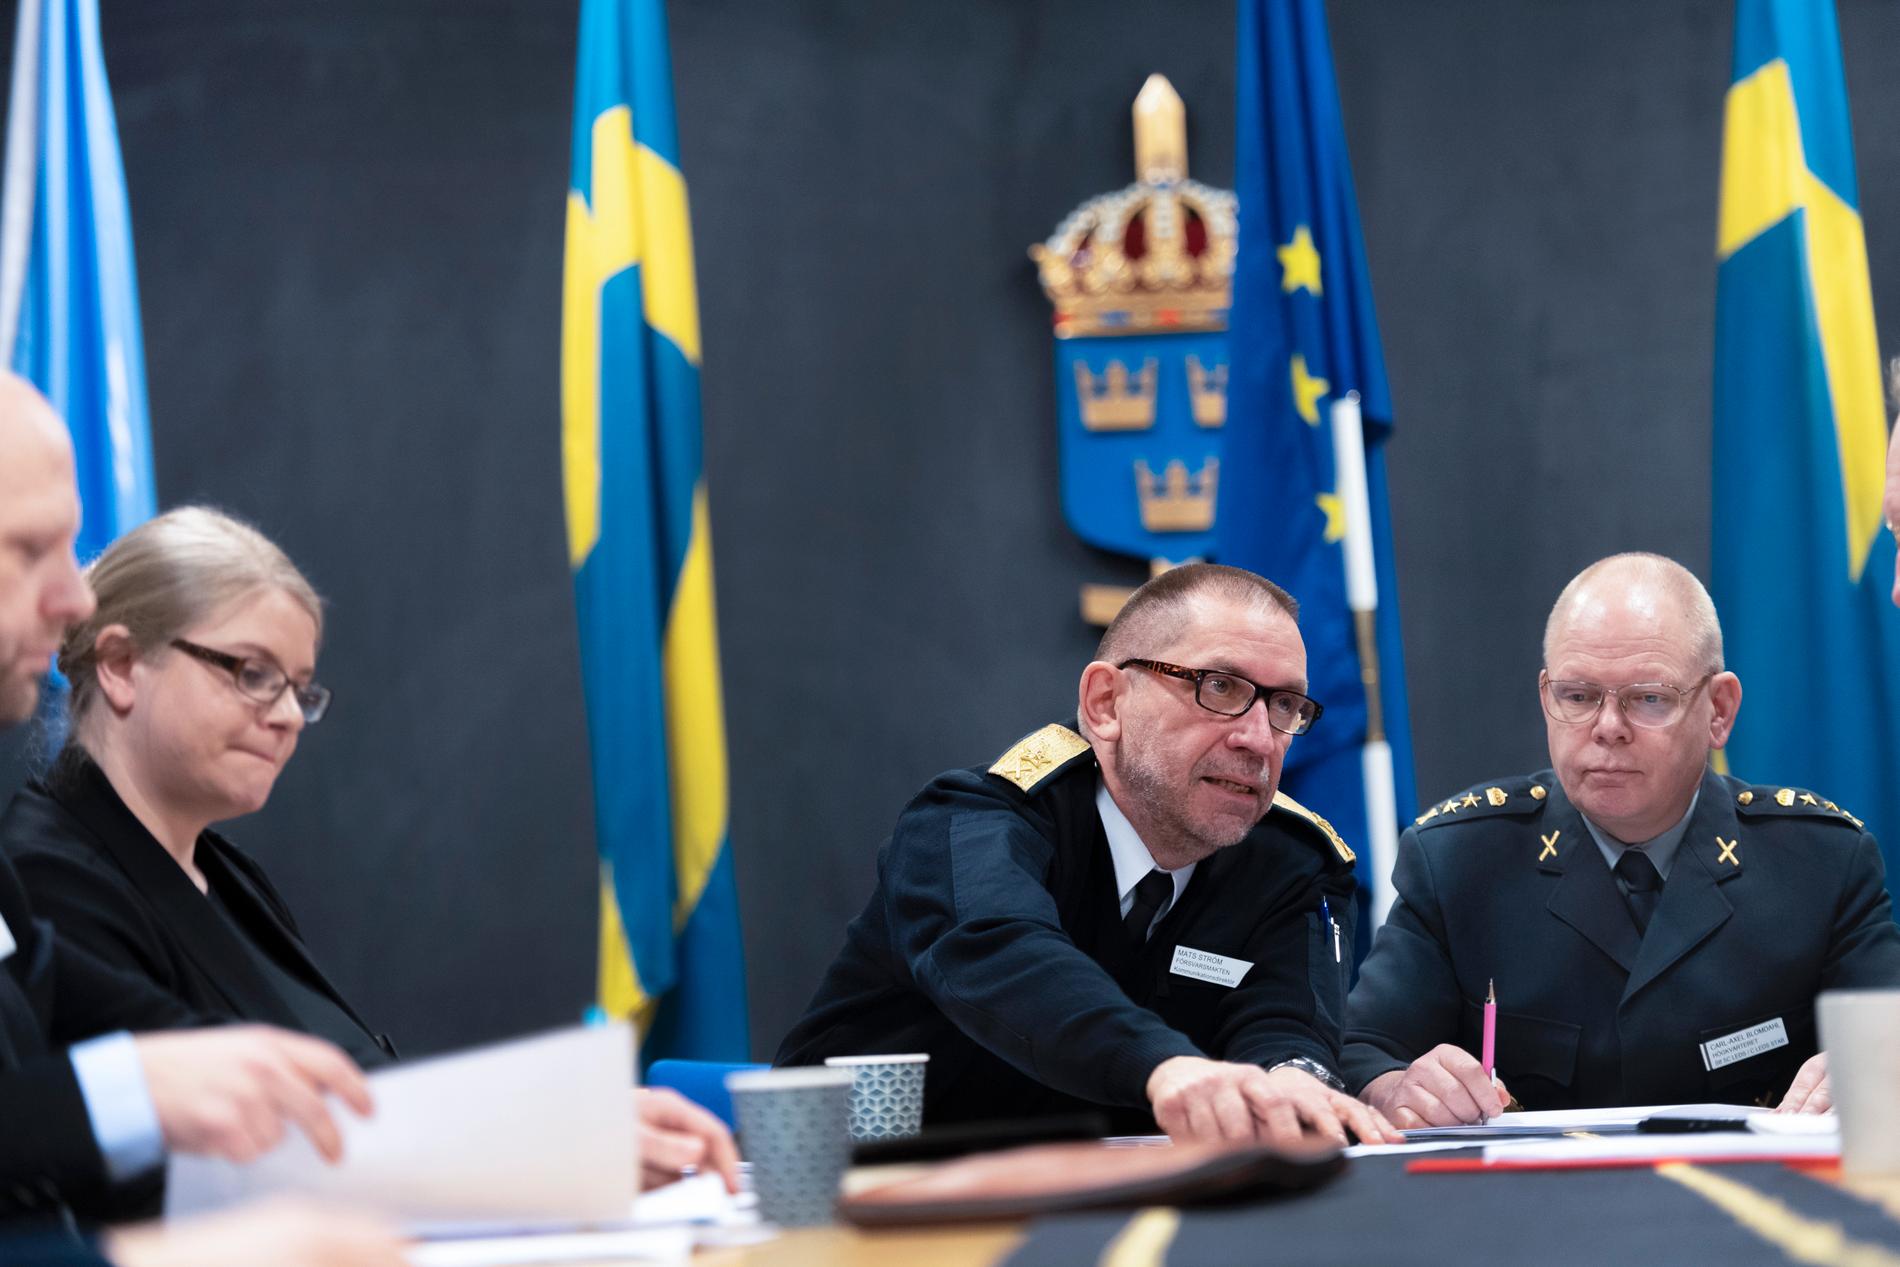 Säkerhetsexperten Kristoffer Kågas, juristens Frida Kertz, kommunikationsdirektören Mats Ström och utredningssekreteraren Carl-Axel Blomdahl vid Försvarsmakten har utrett fallet med den "falske officeren".